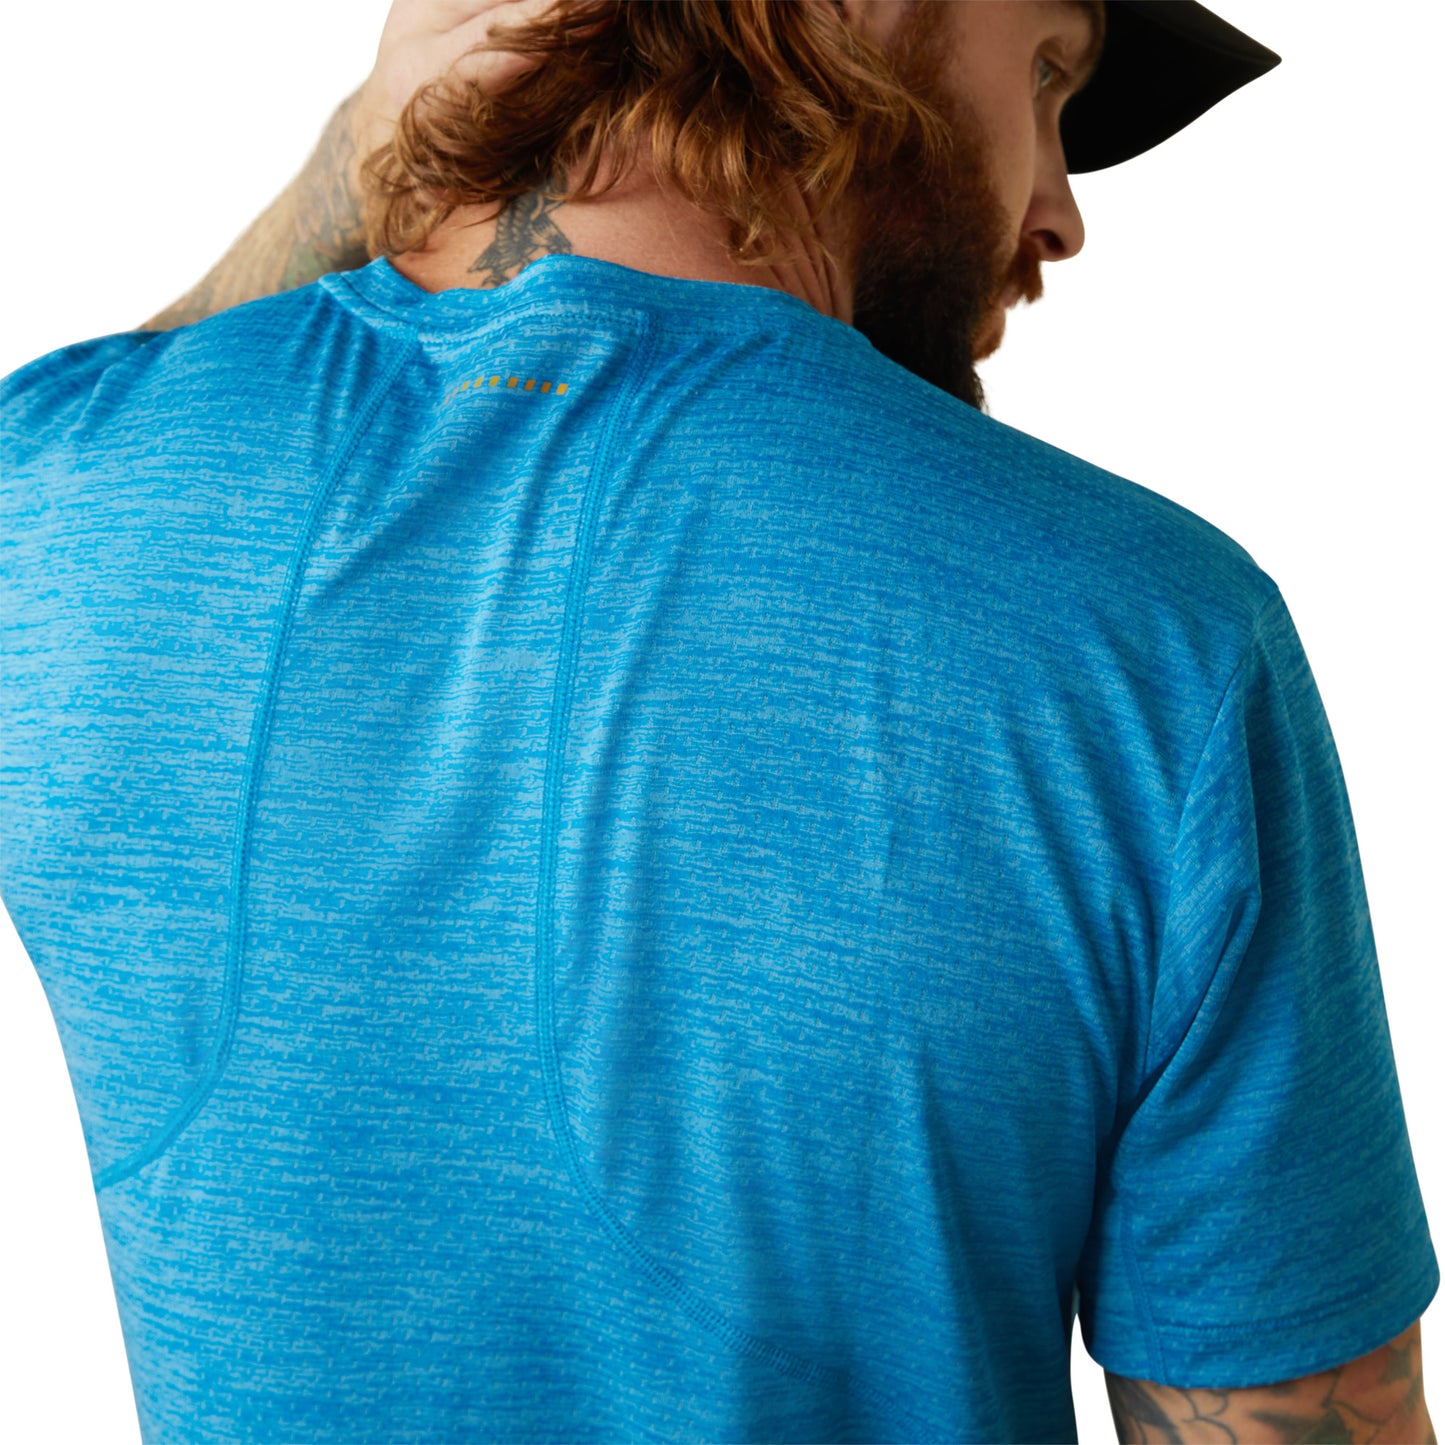 Ariat® Men's Rebar Evolution Athletic Fit Scuba Blue T-Shirt 10043325